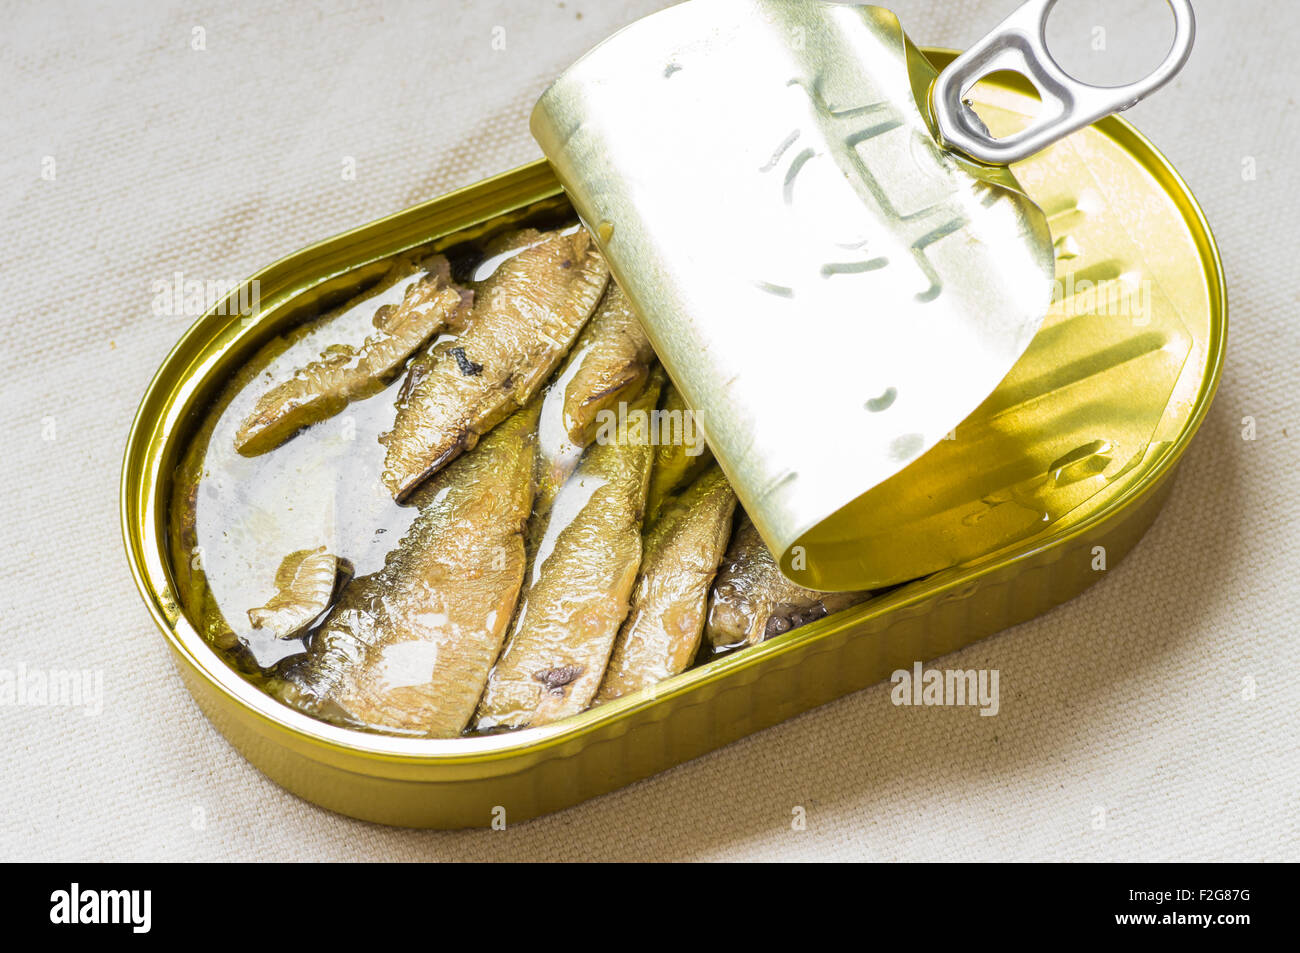 Leckerer Fisch aus der Dose Sardinen in der Dose auf dem Tisch  Stockfotografie - Alamy